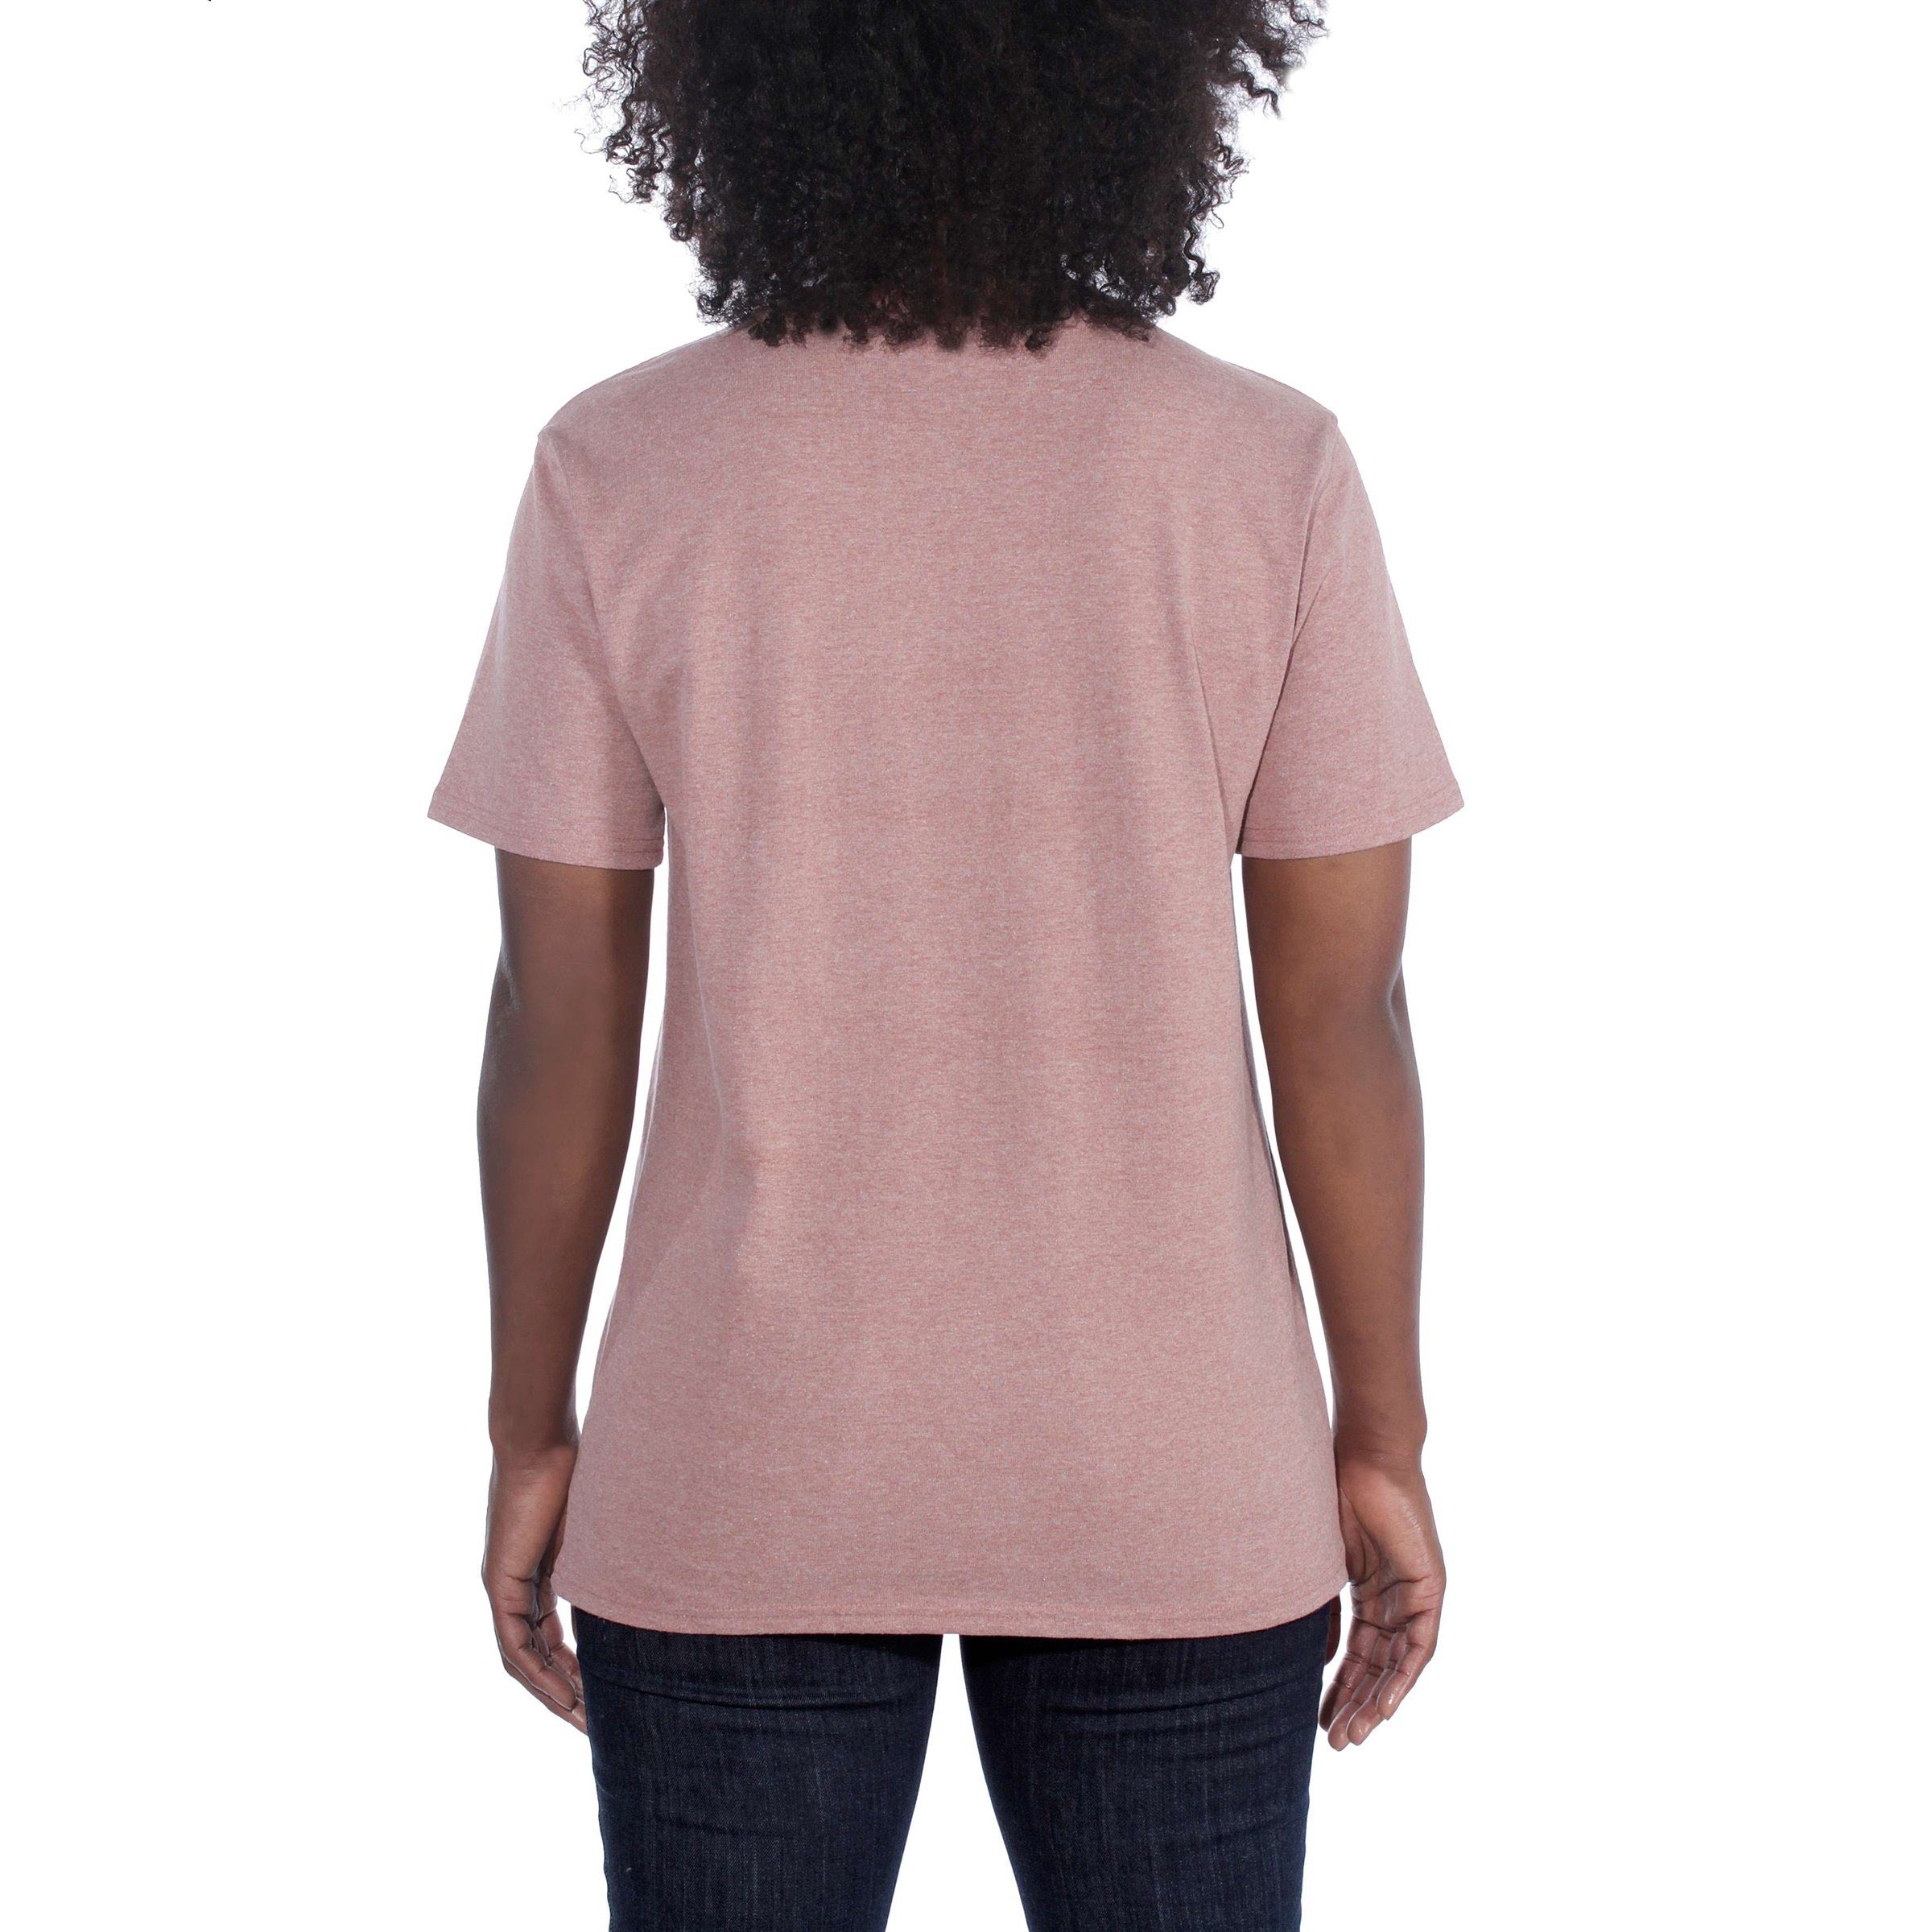 Fit Heavyweight Damen T-Shirt Pocket Adult rose ash T-Shirt Carhartt Carhartt Short-Sleeve Loose